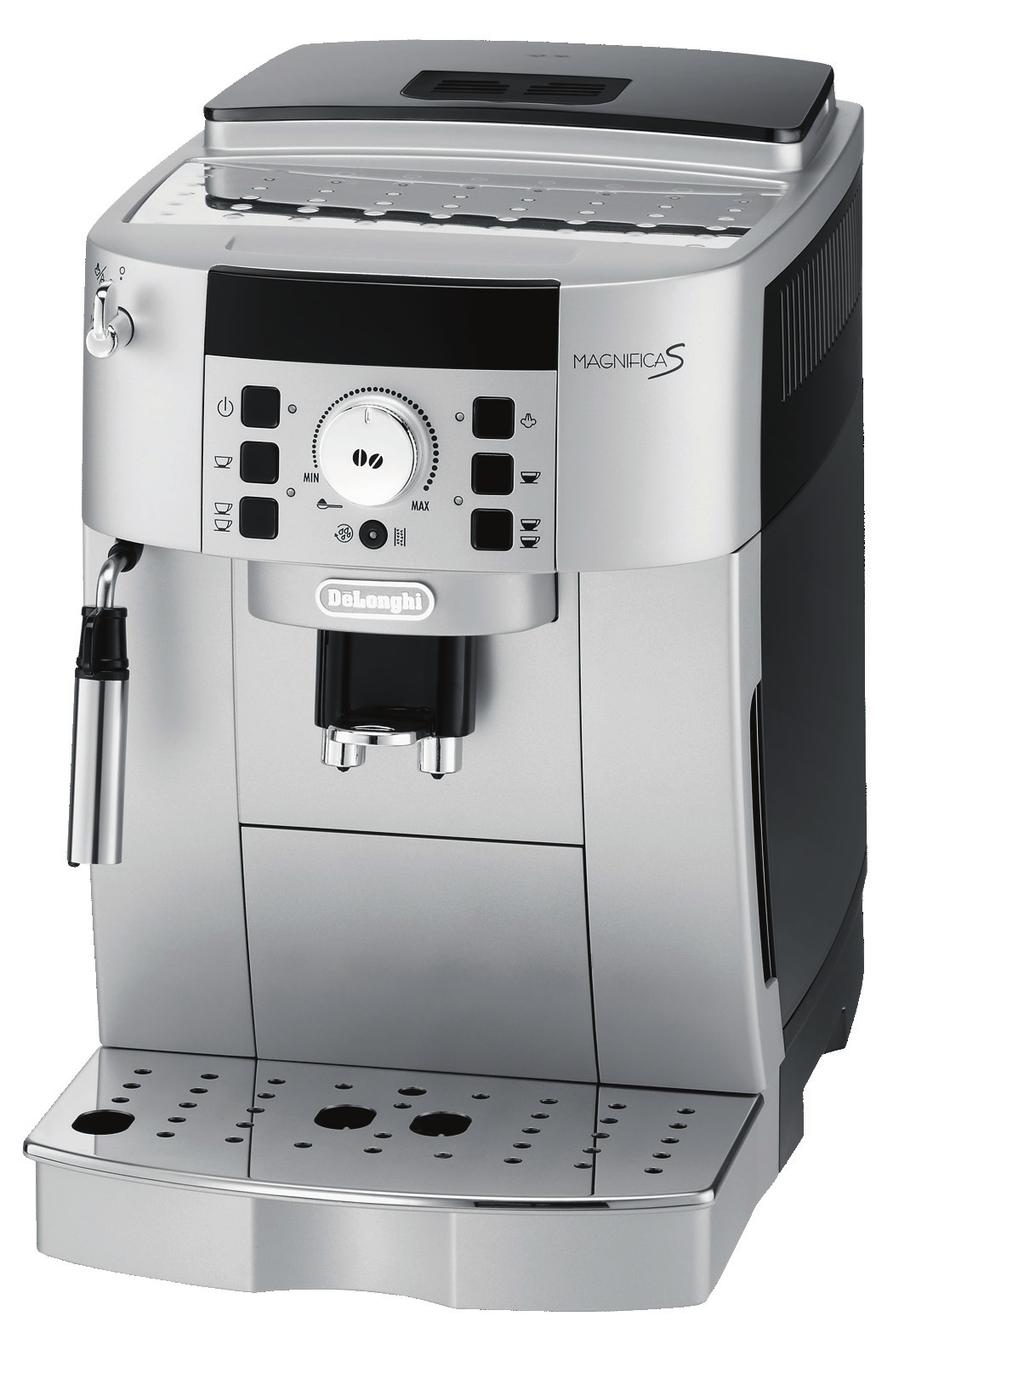 πλήκτρο για 1 ή 2 Espresso (40ml), 1 ή 2 lungo (110ml) - Κεντρικός στρογγυλός διακόπτης για επιπλέον άρωμα.